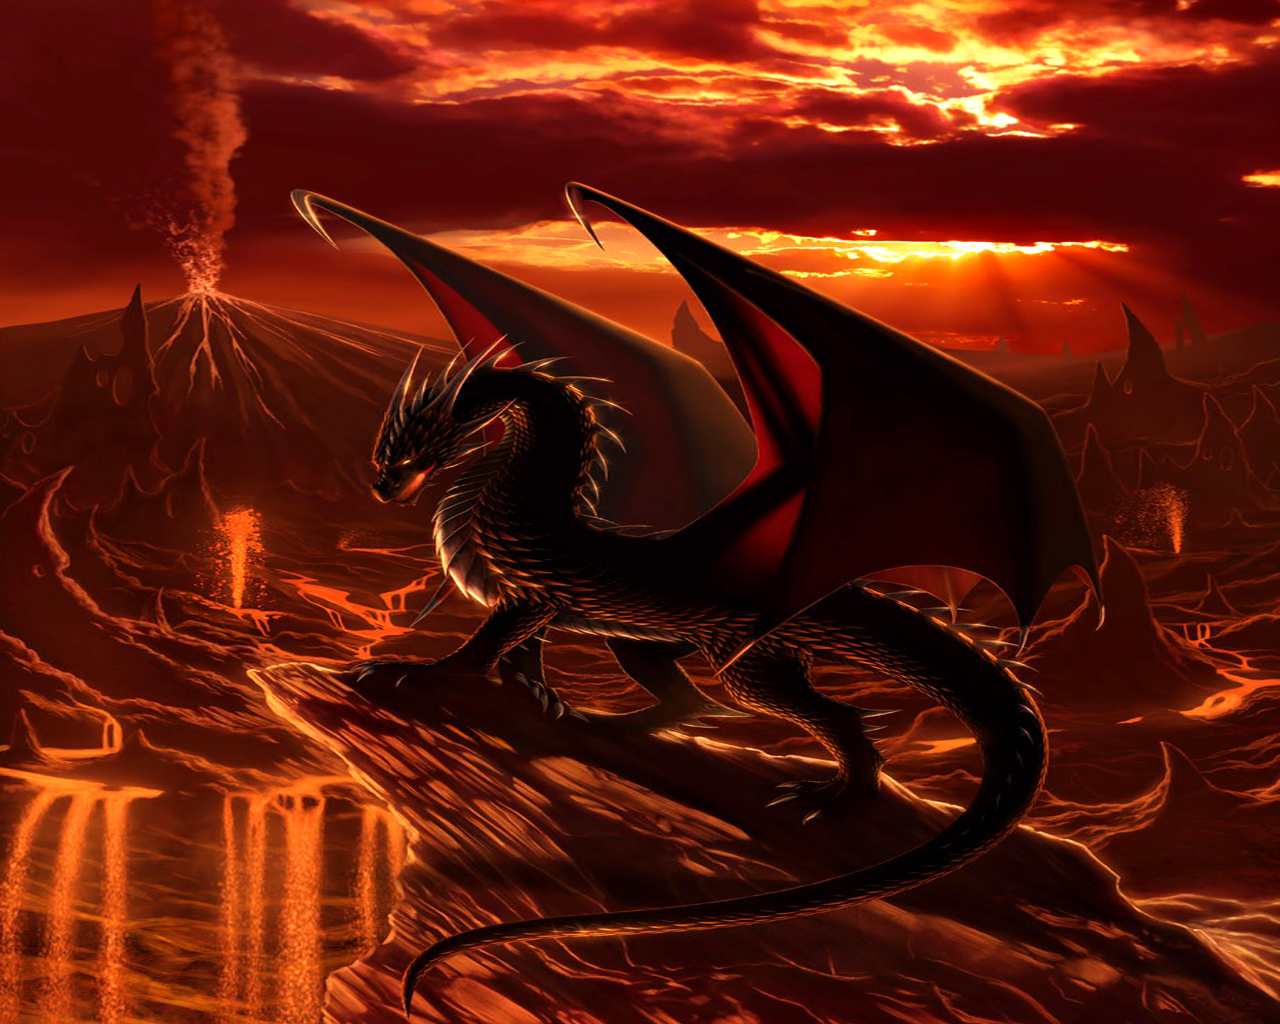 fond d'écran dragon rouge,dragon,oeuvre de cg,personnage fictif,créature mythique,mythologie